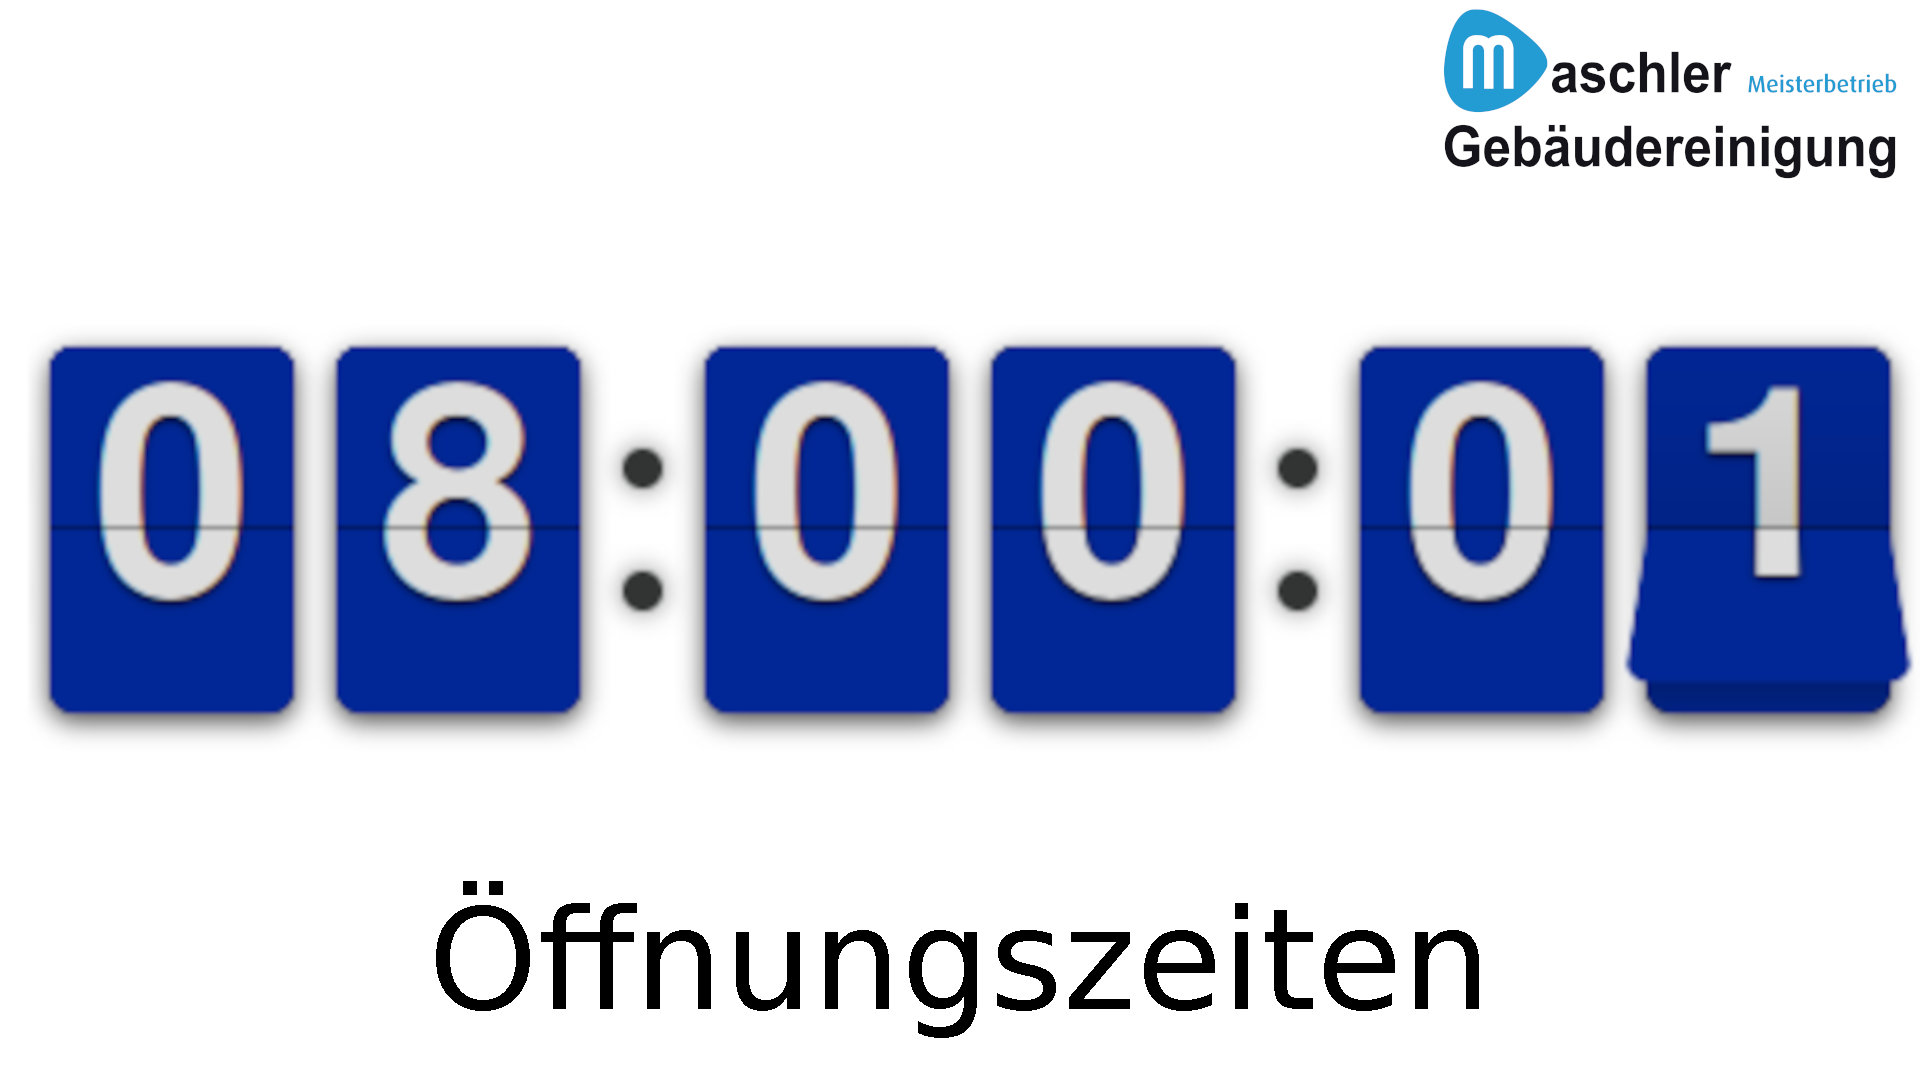 Öffnungszeiten Gebäudereinigung Maschler GmbH 8:00 bis 15:00 Uhr